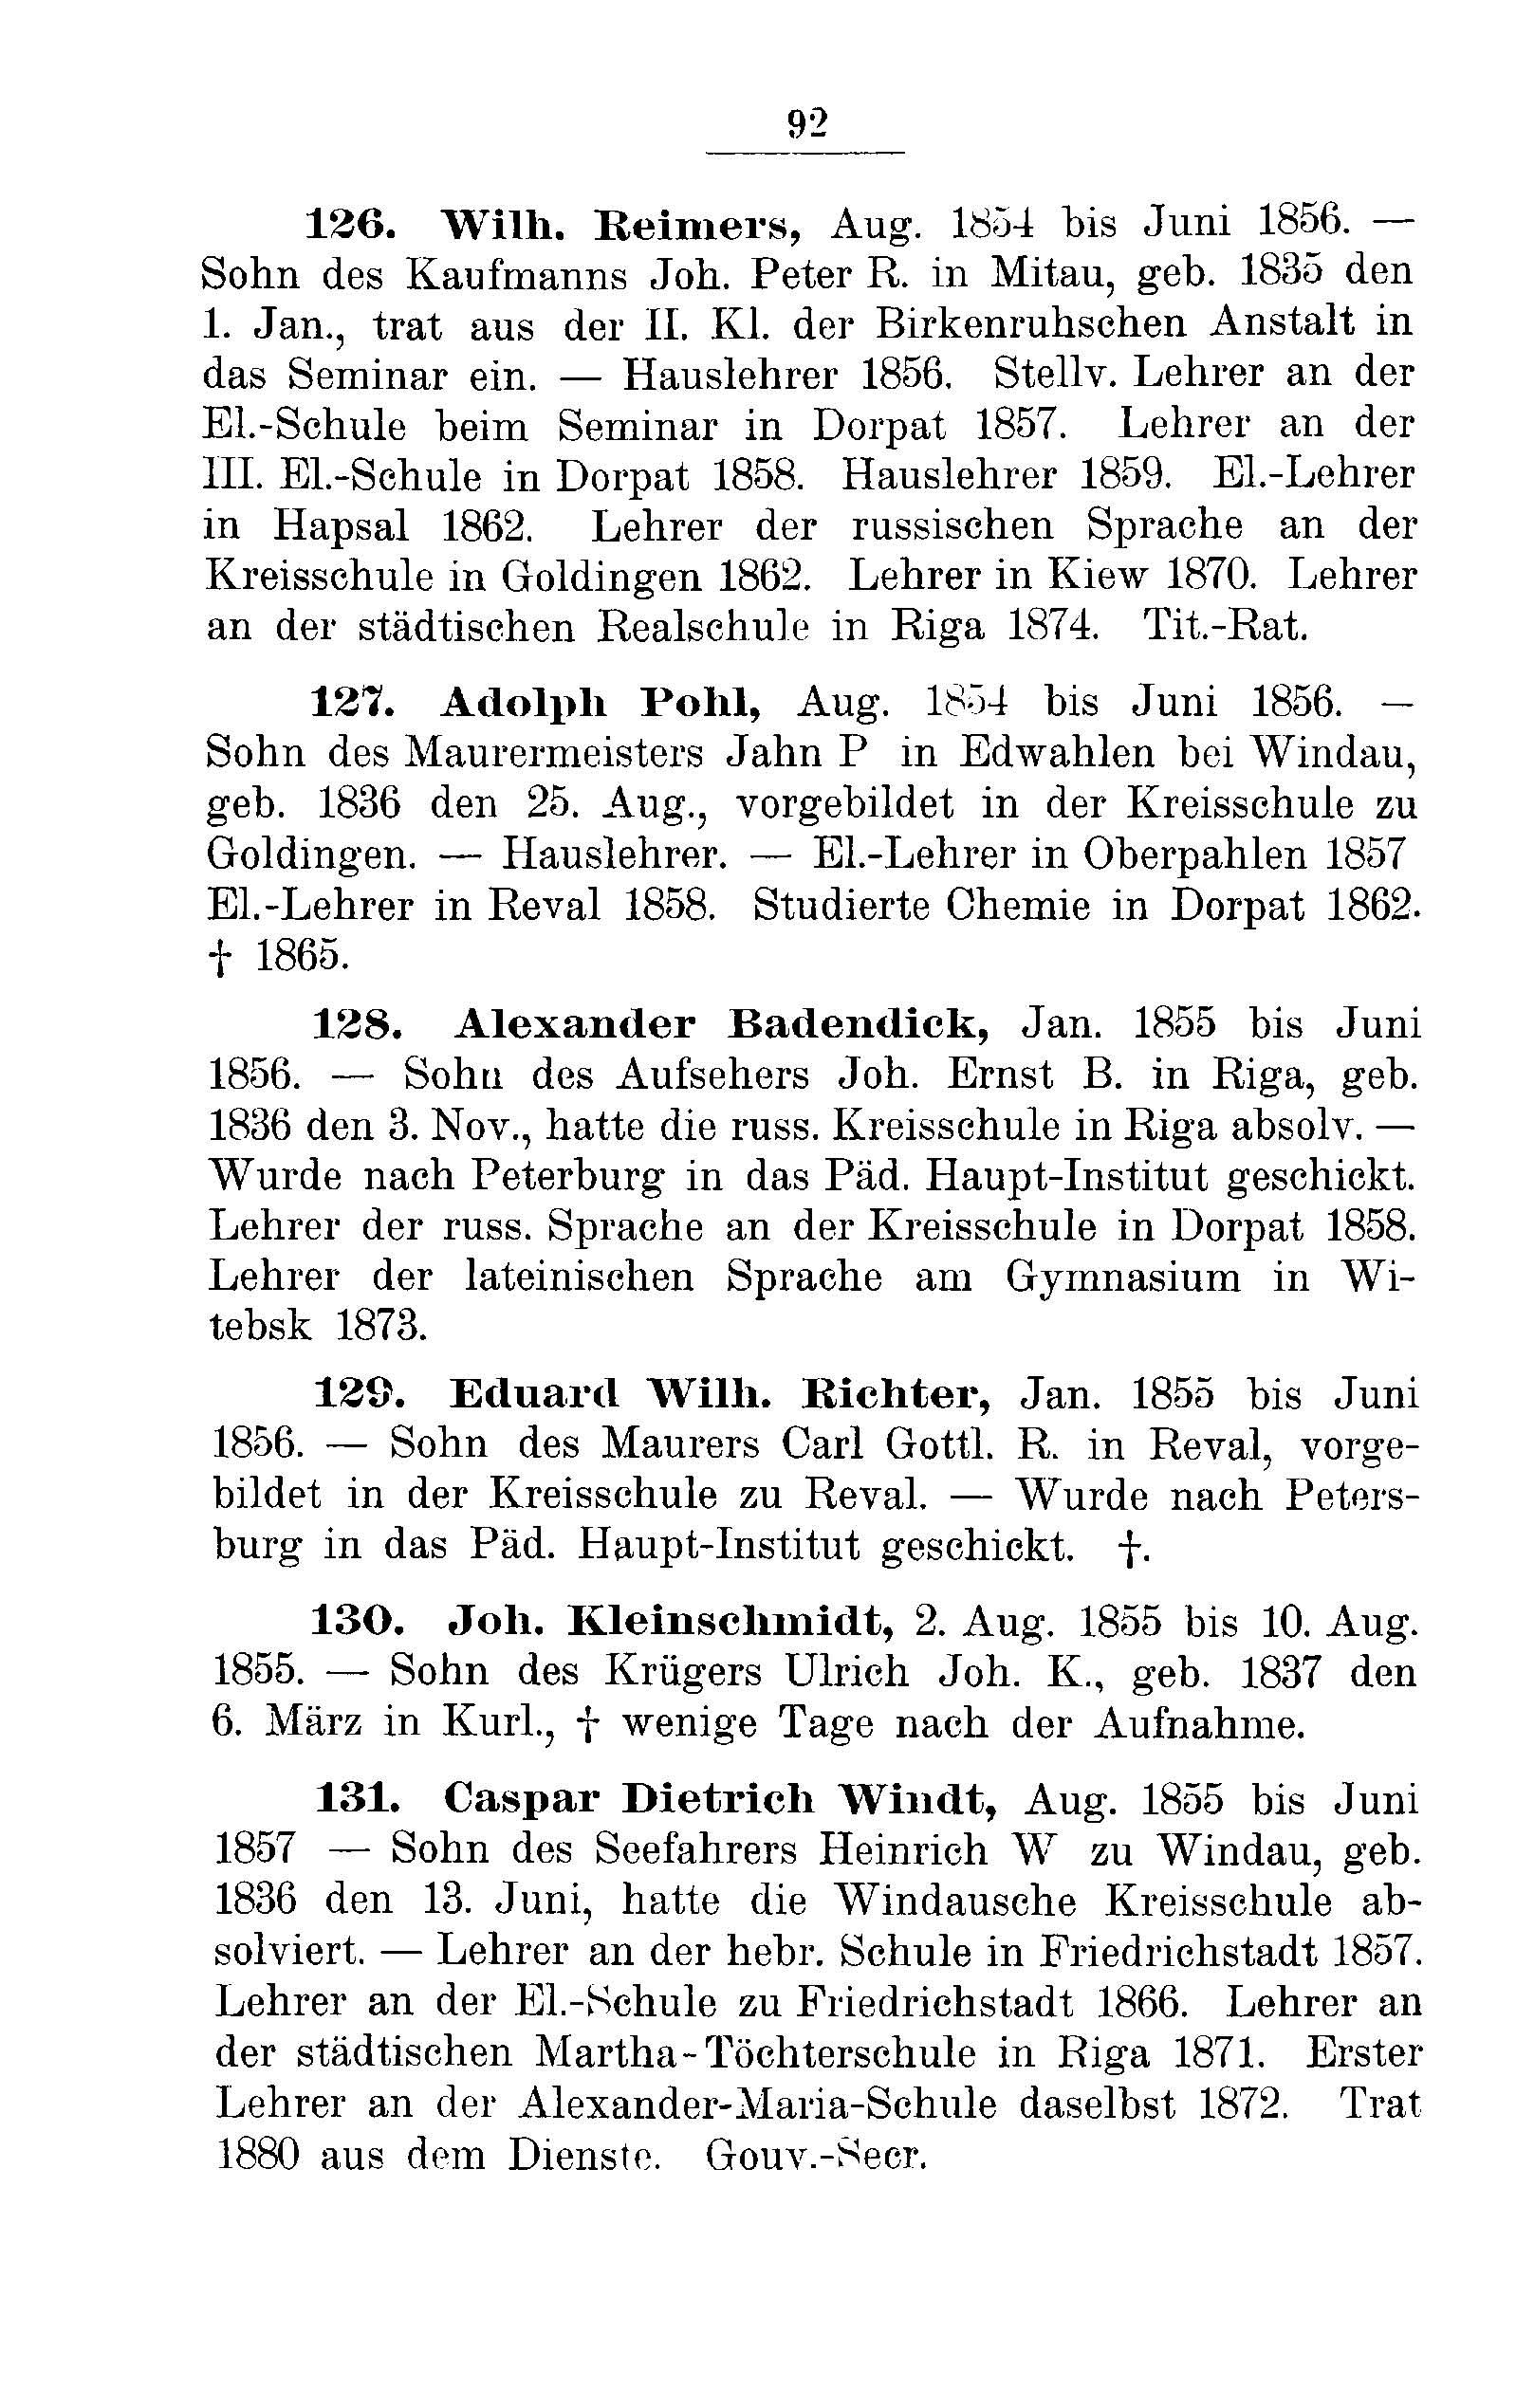 Das Erste Dorpatsche Lehrer-Seminar (1890) | 95. Main body of text